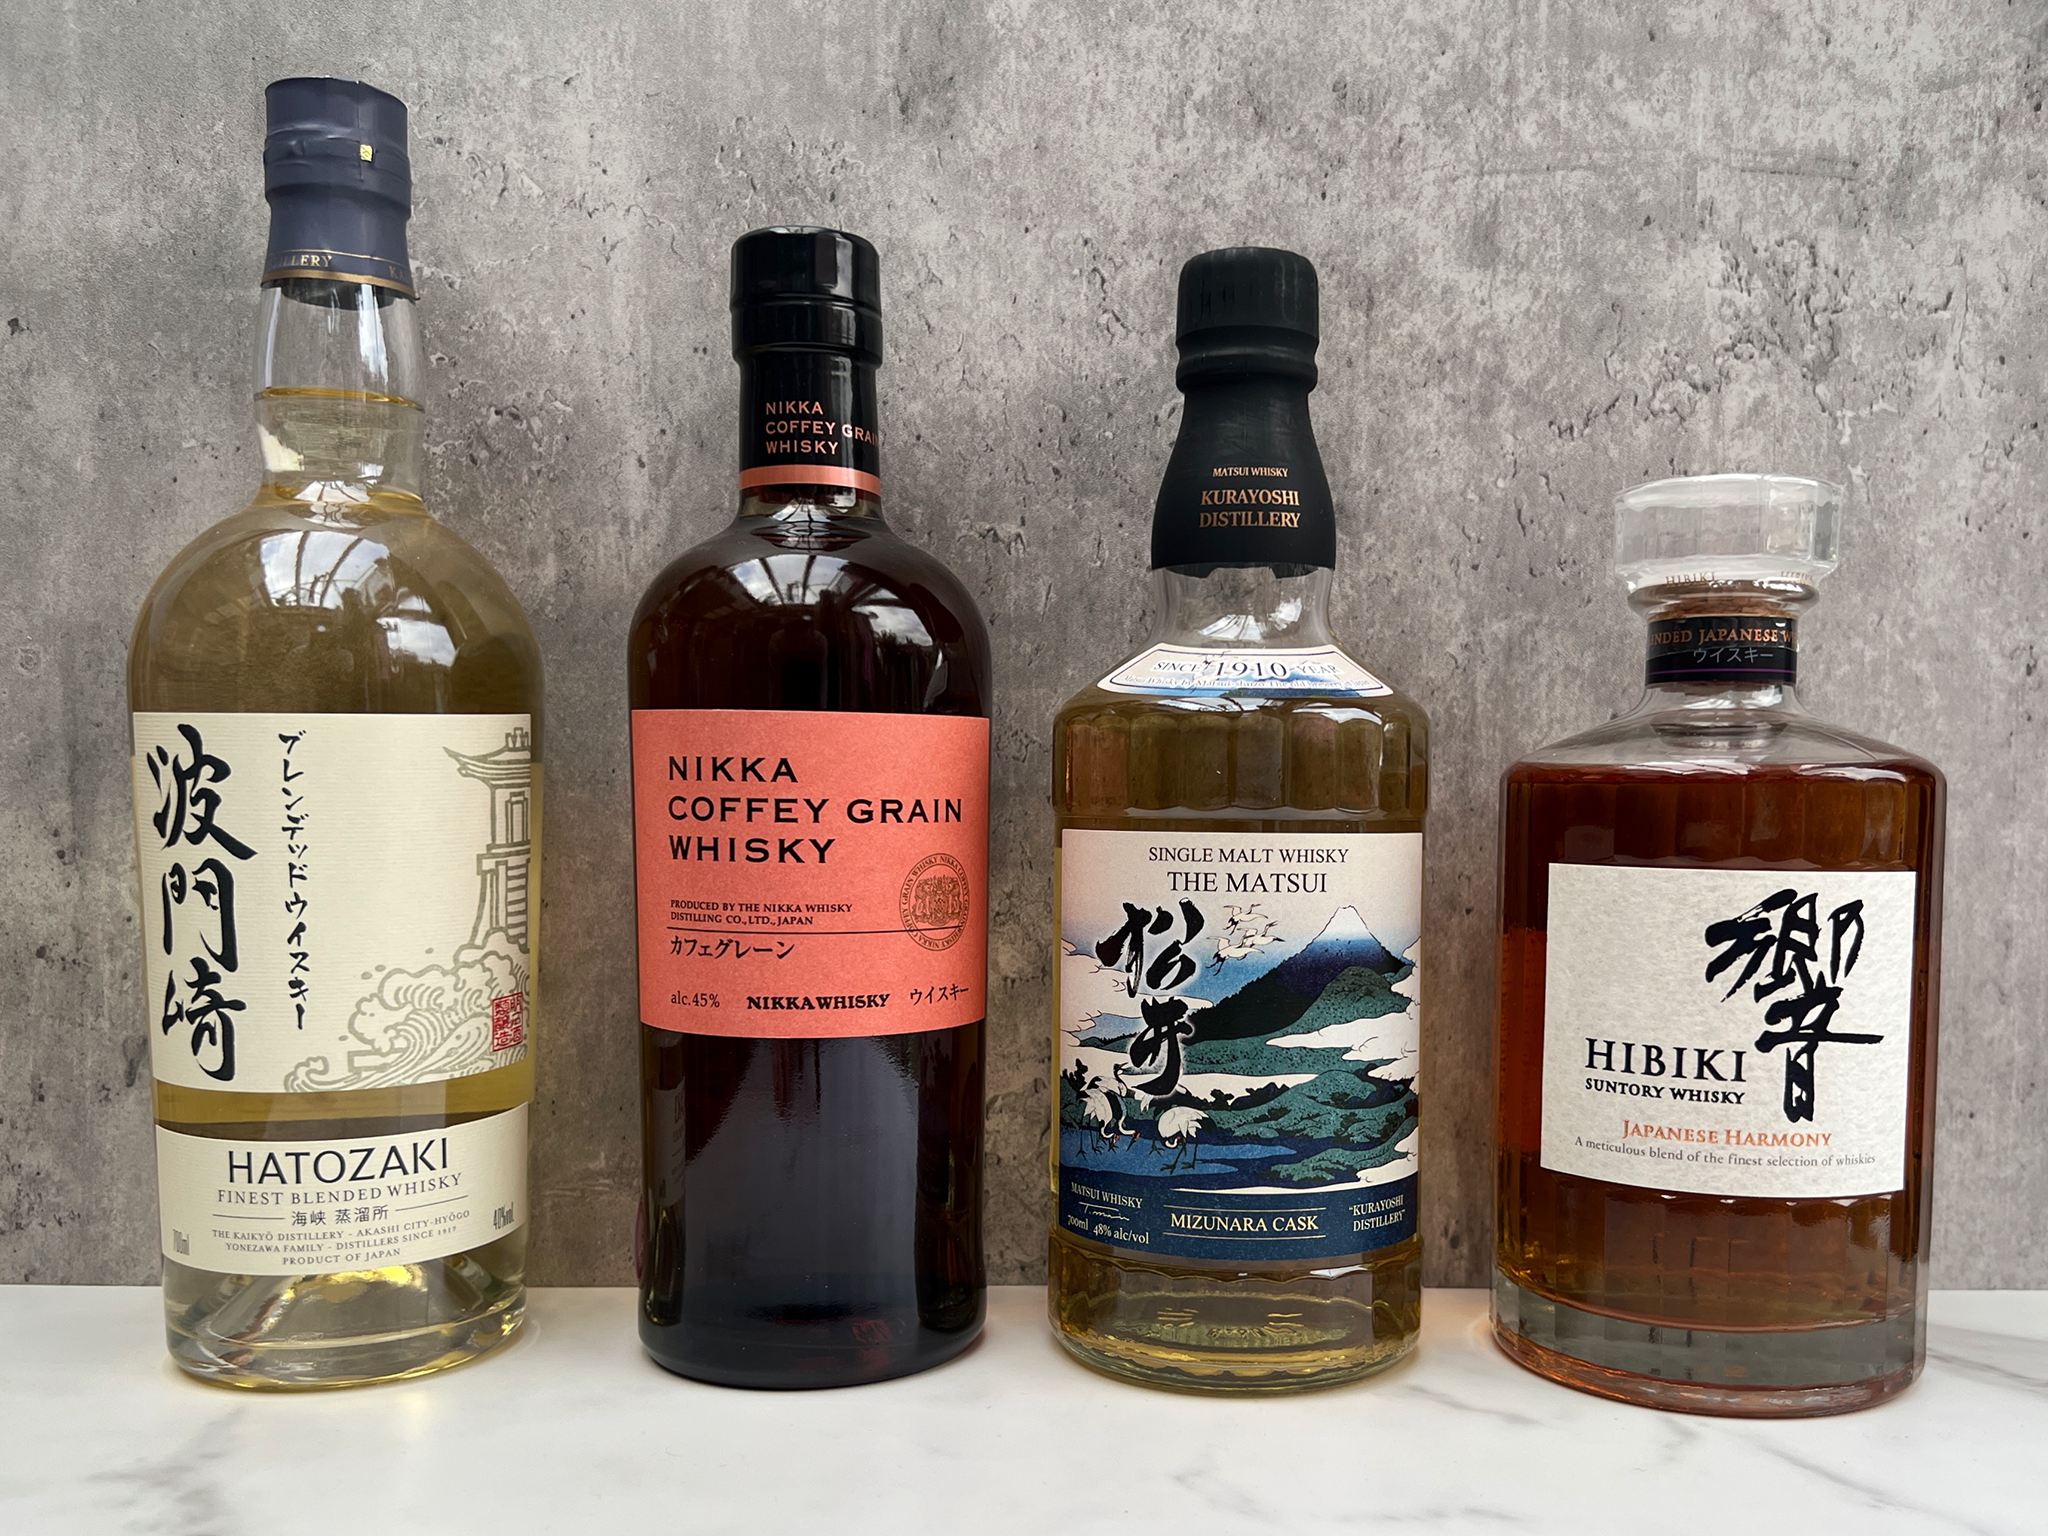 Toguchi Japanese Whisky